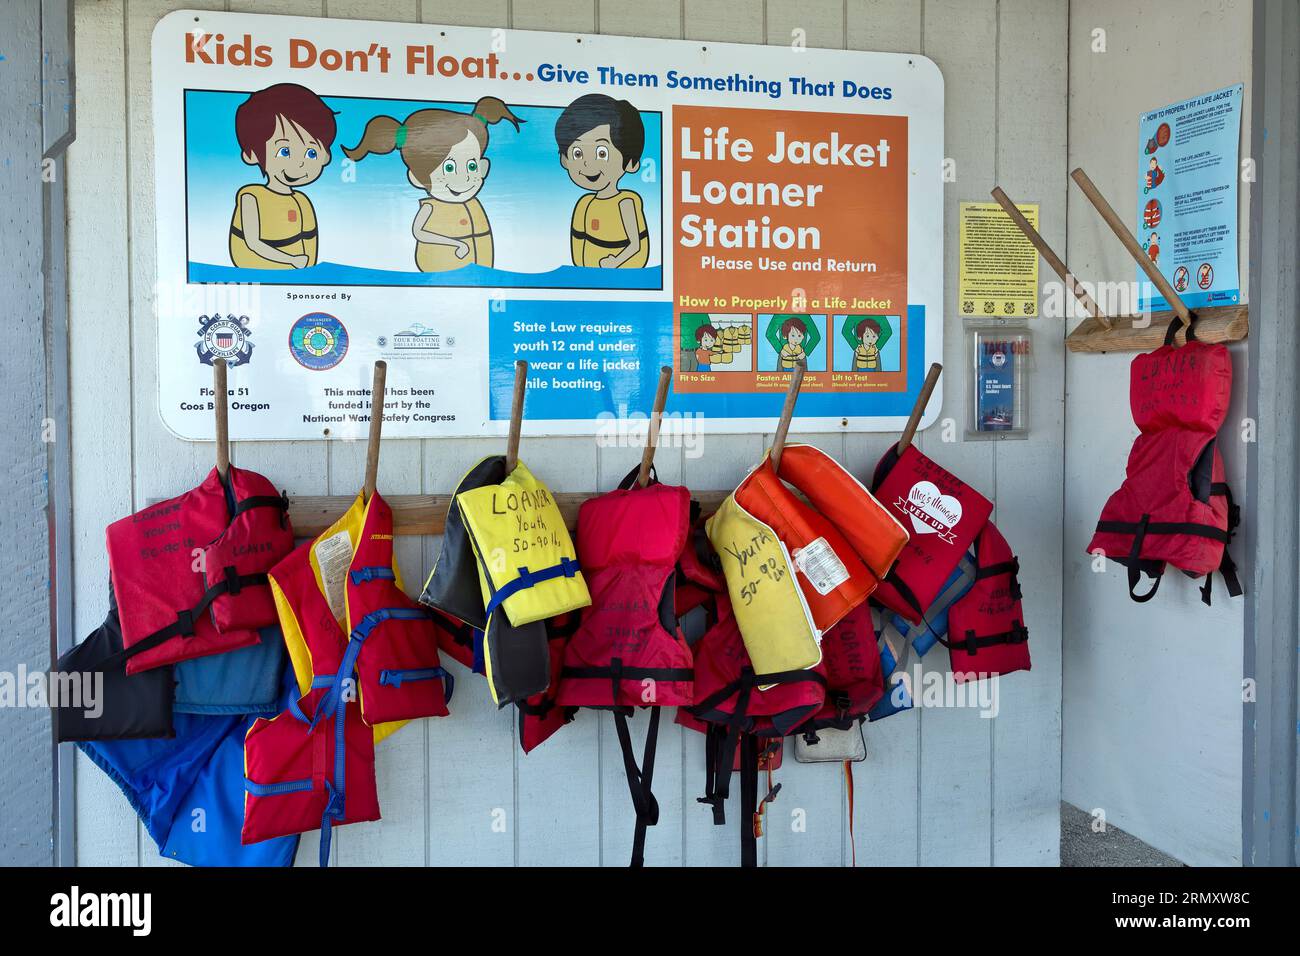 Life Jacket Loaner Station, Charleston Harbor, National Water Safety, la loi de l'État exige que les jeunes de 12 ans et moins portent un gilet de sauvetage lorsqu'ils naviguent. Banque D'Images